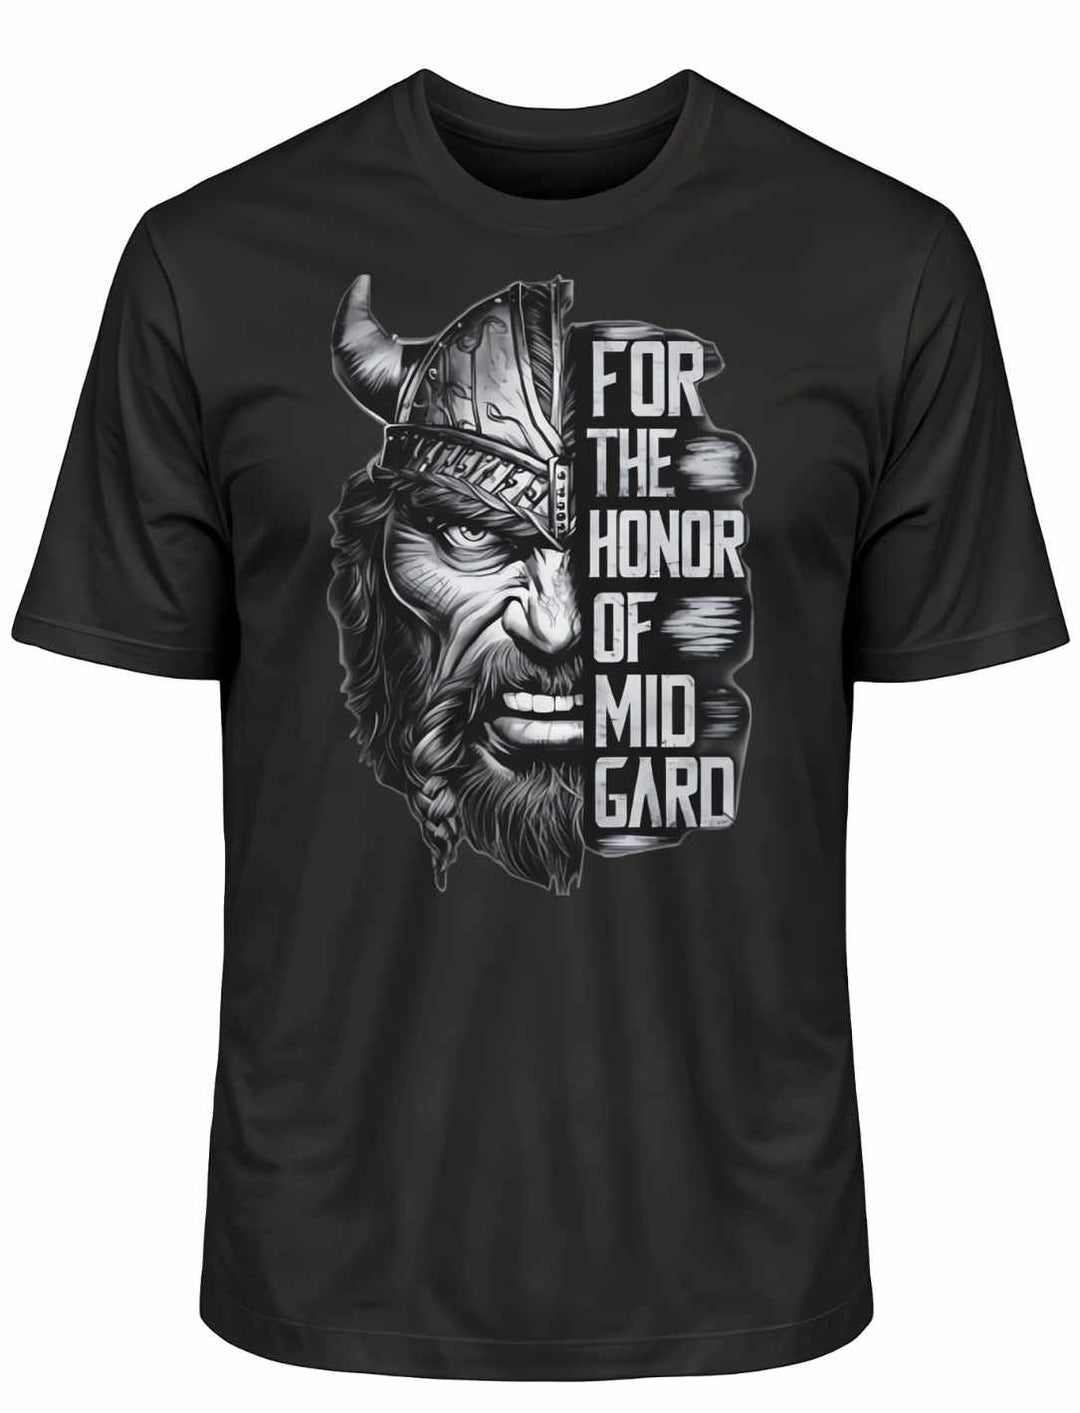 Schwarzes 'The Honor of Midgard' T-Shirt auf weißem Hintergrund, mit einem kräftigen Druck, der nordische Krieger und Mythen symbolisiert.